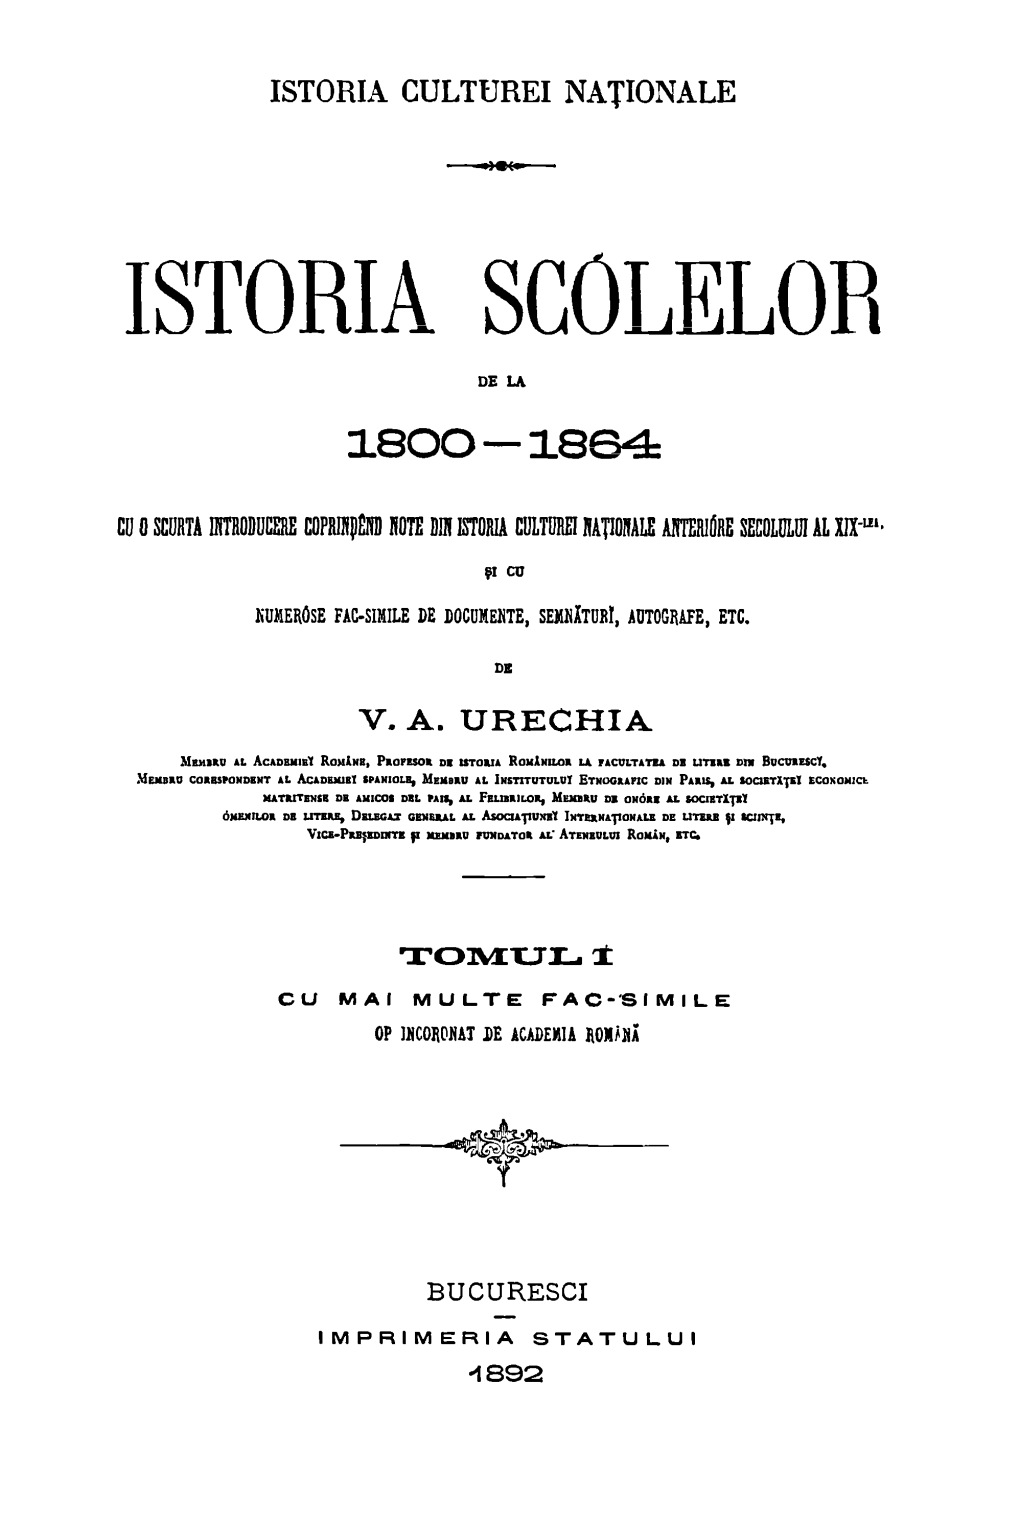 Istoria Scolelob